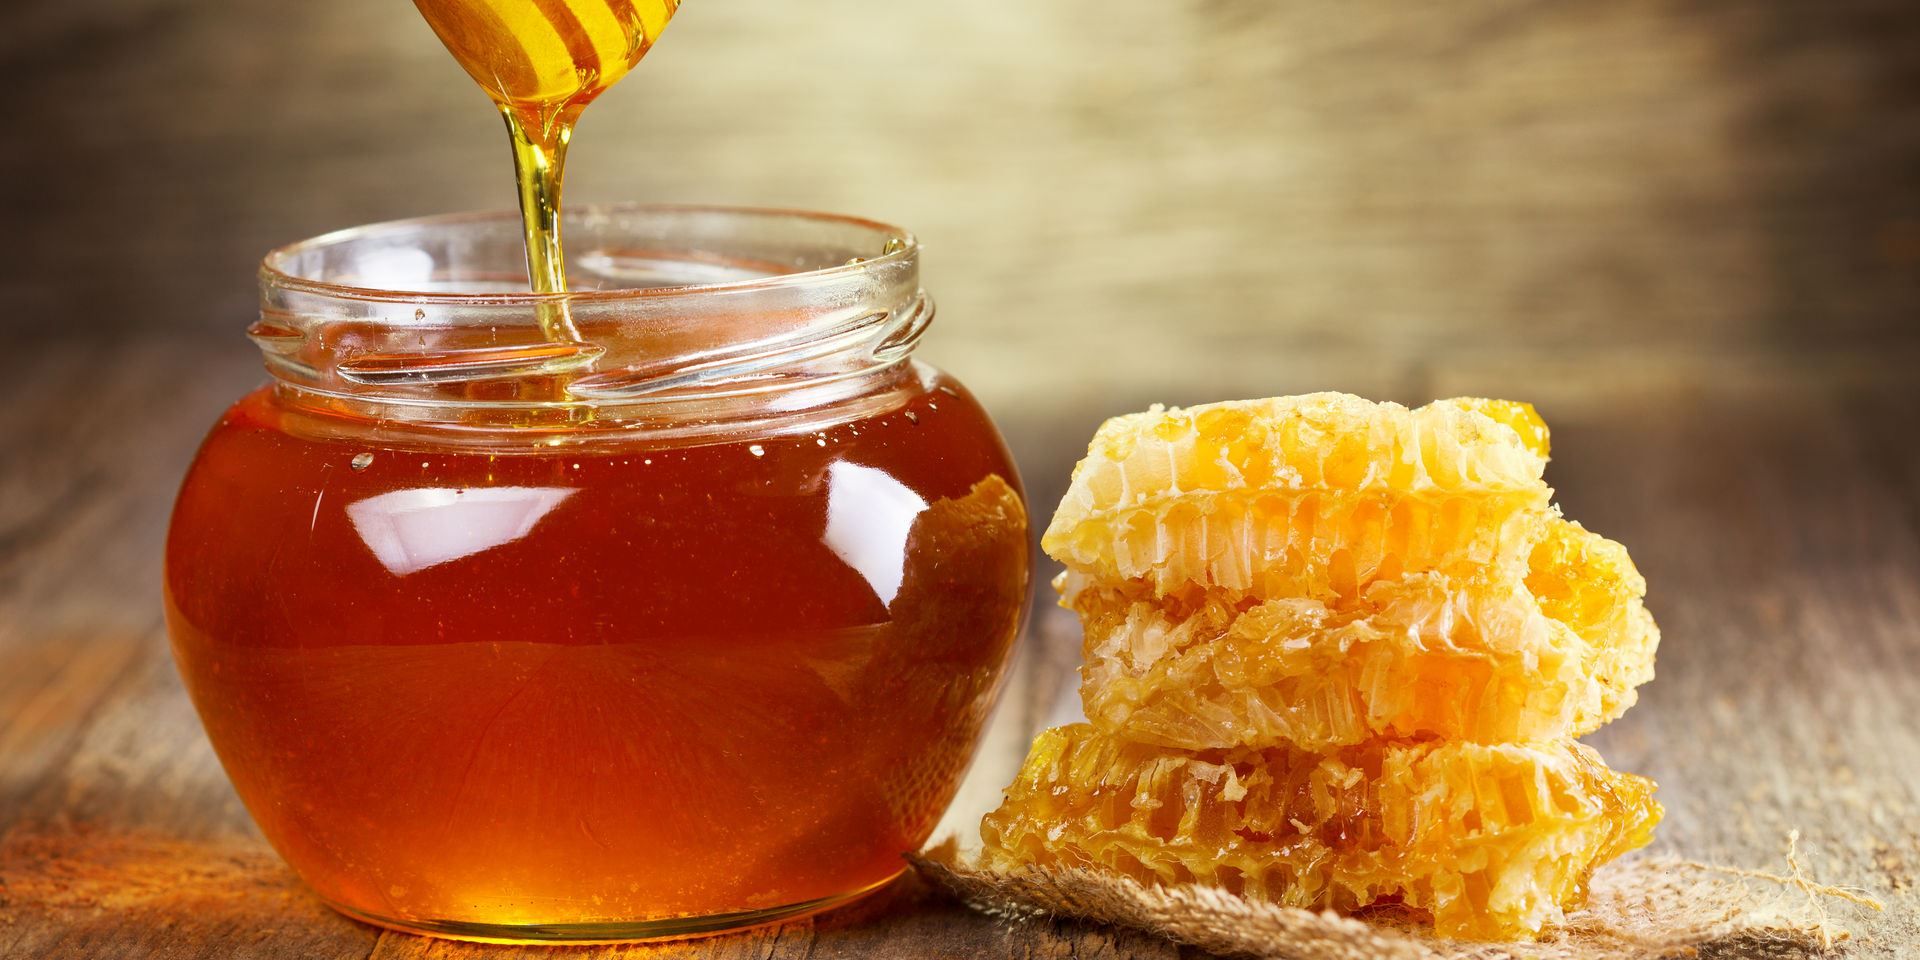 Erstellt eine Vorlage für einen Online-Shop zum Thema Honig